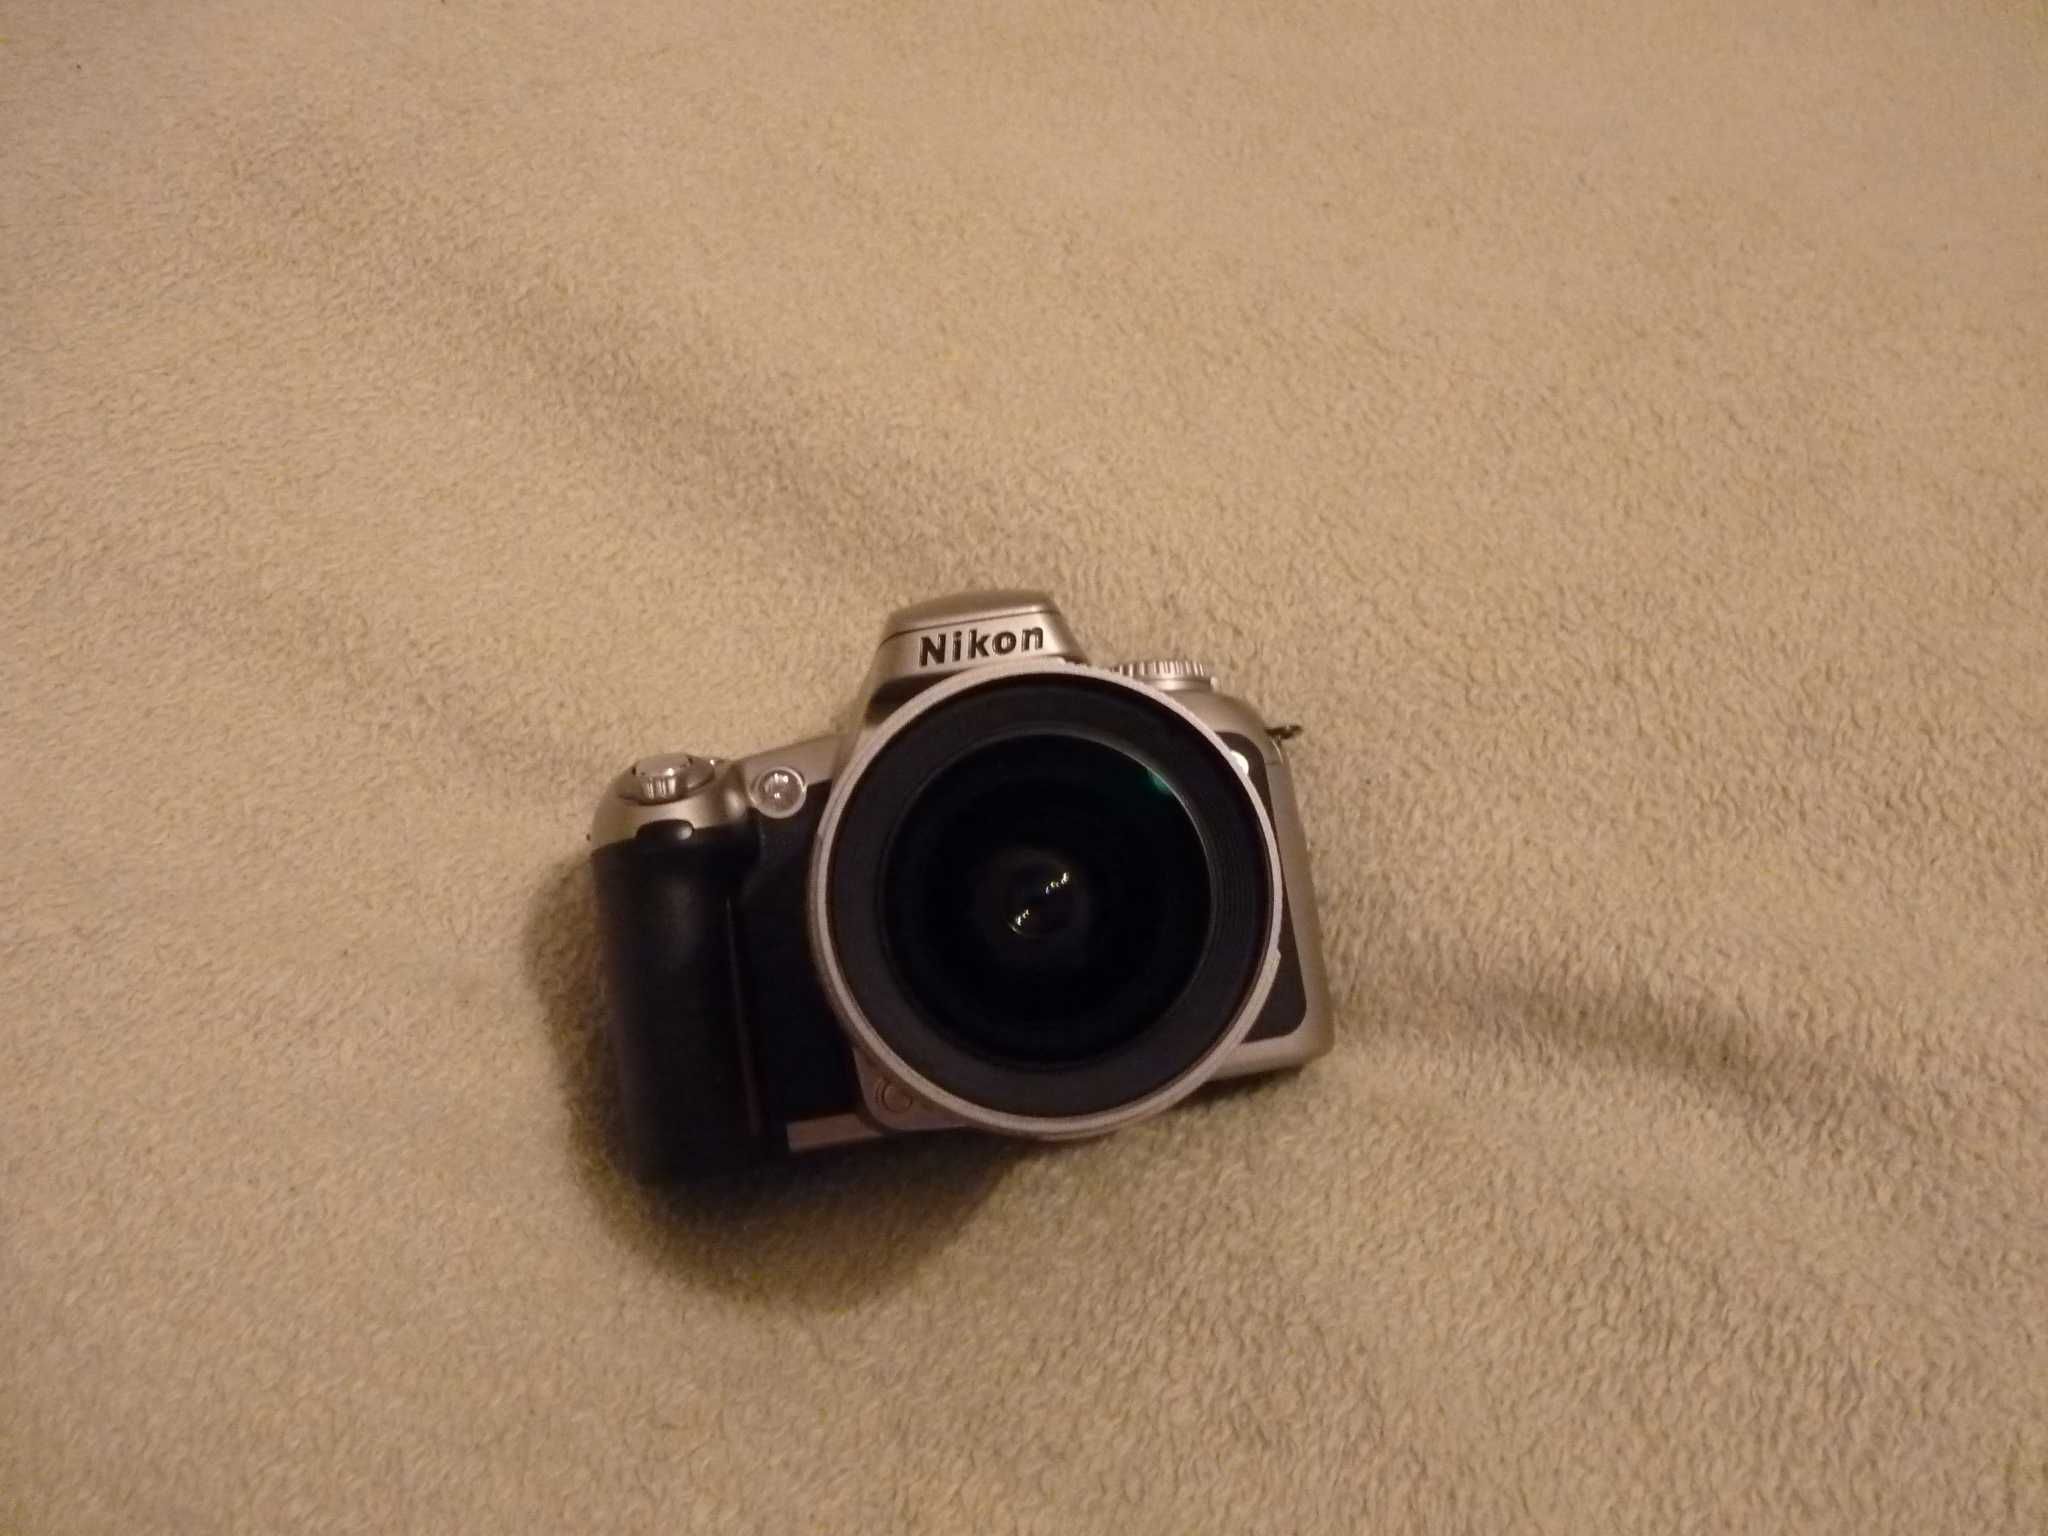 Analogowa lustrzanka Nikon F 75 w stanie jak nowa. Niespotykana okazja